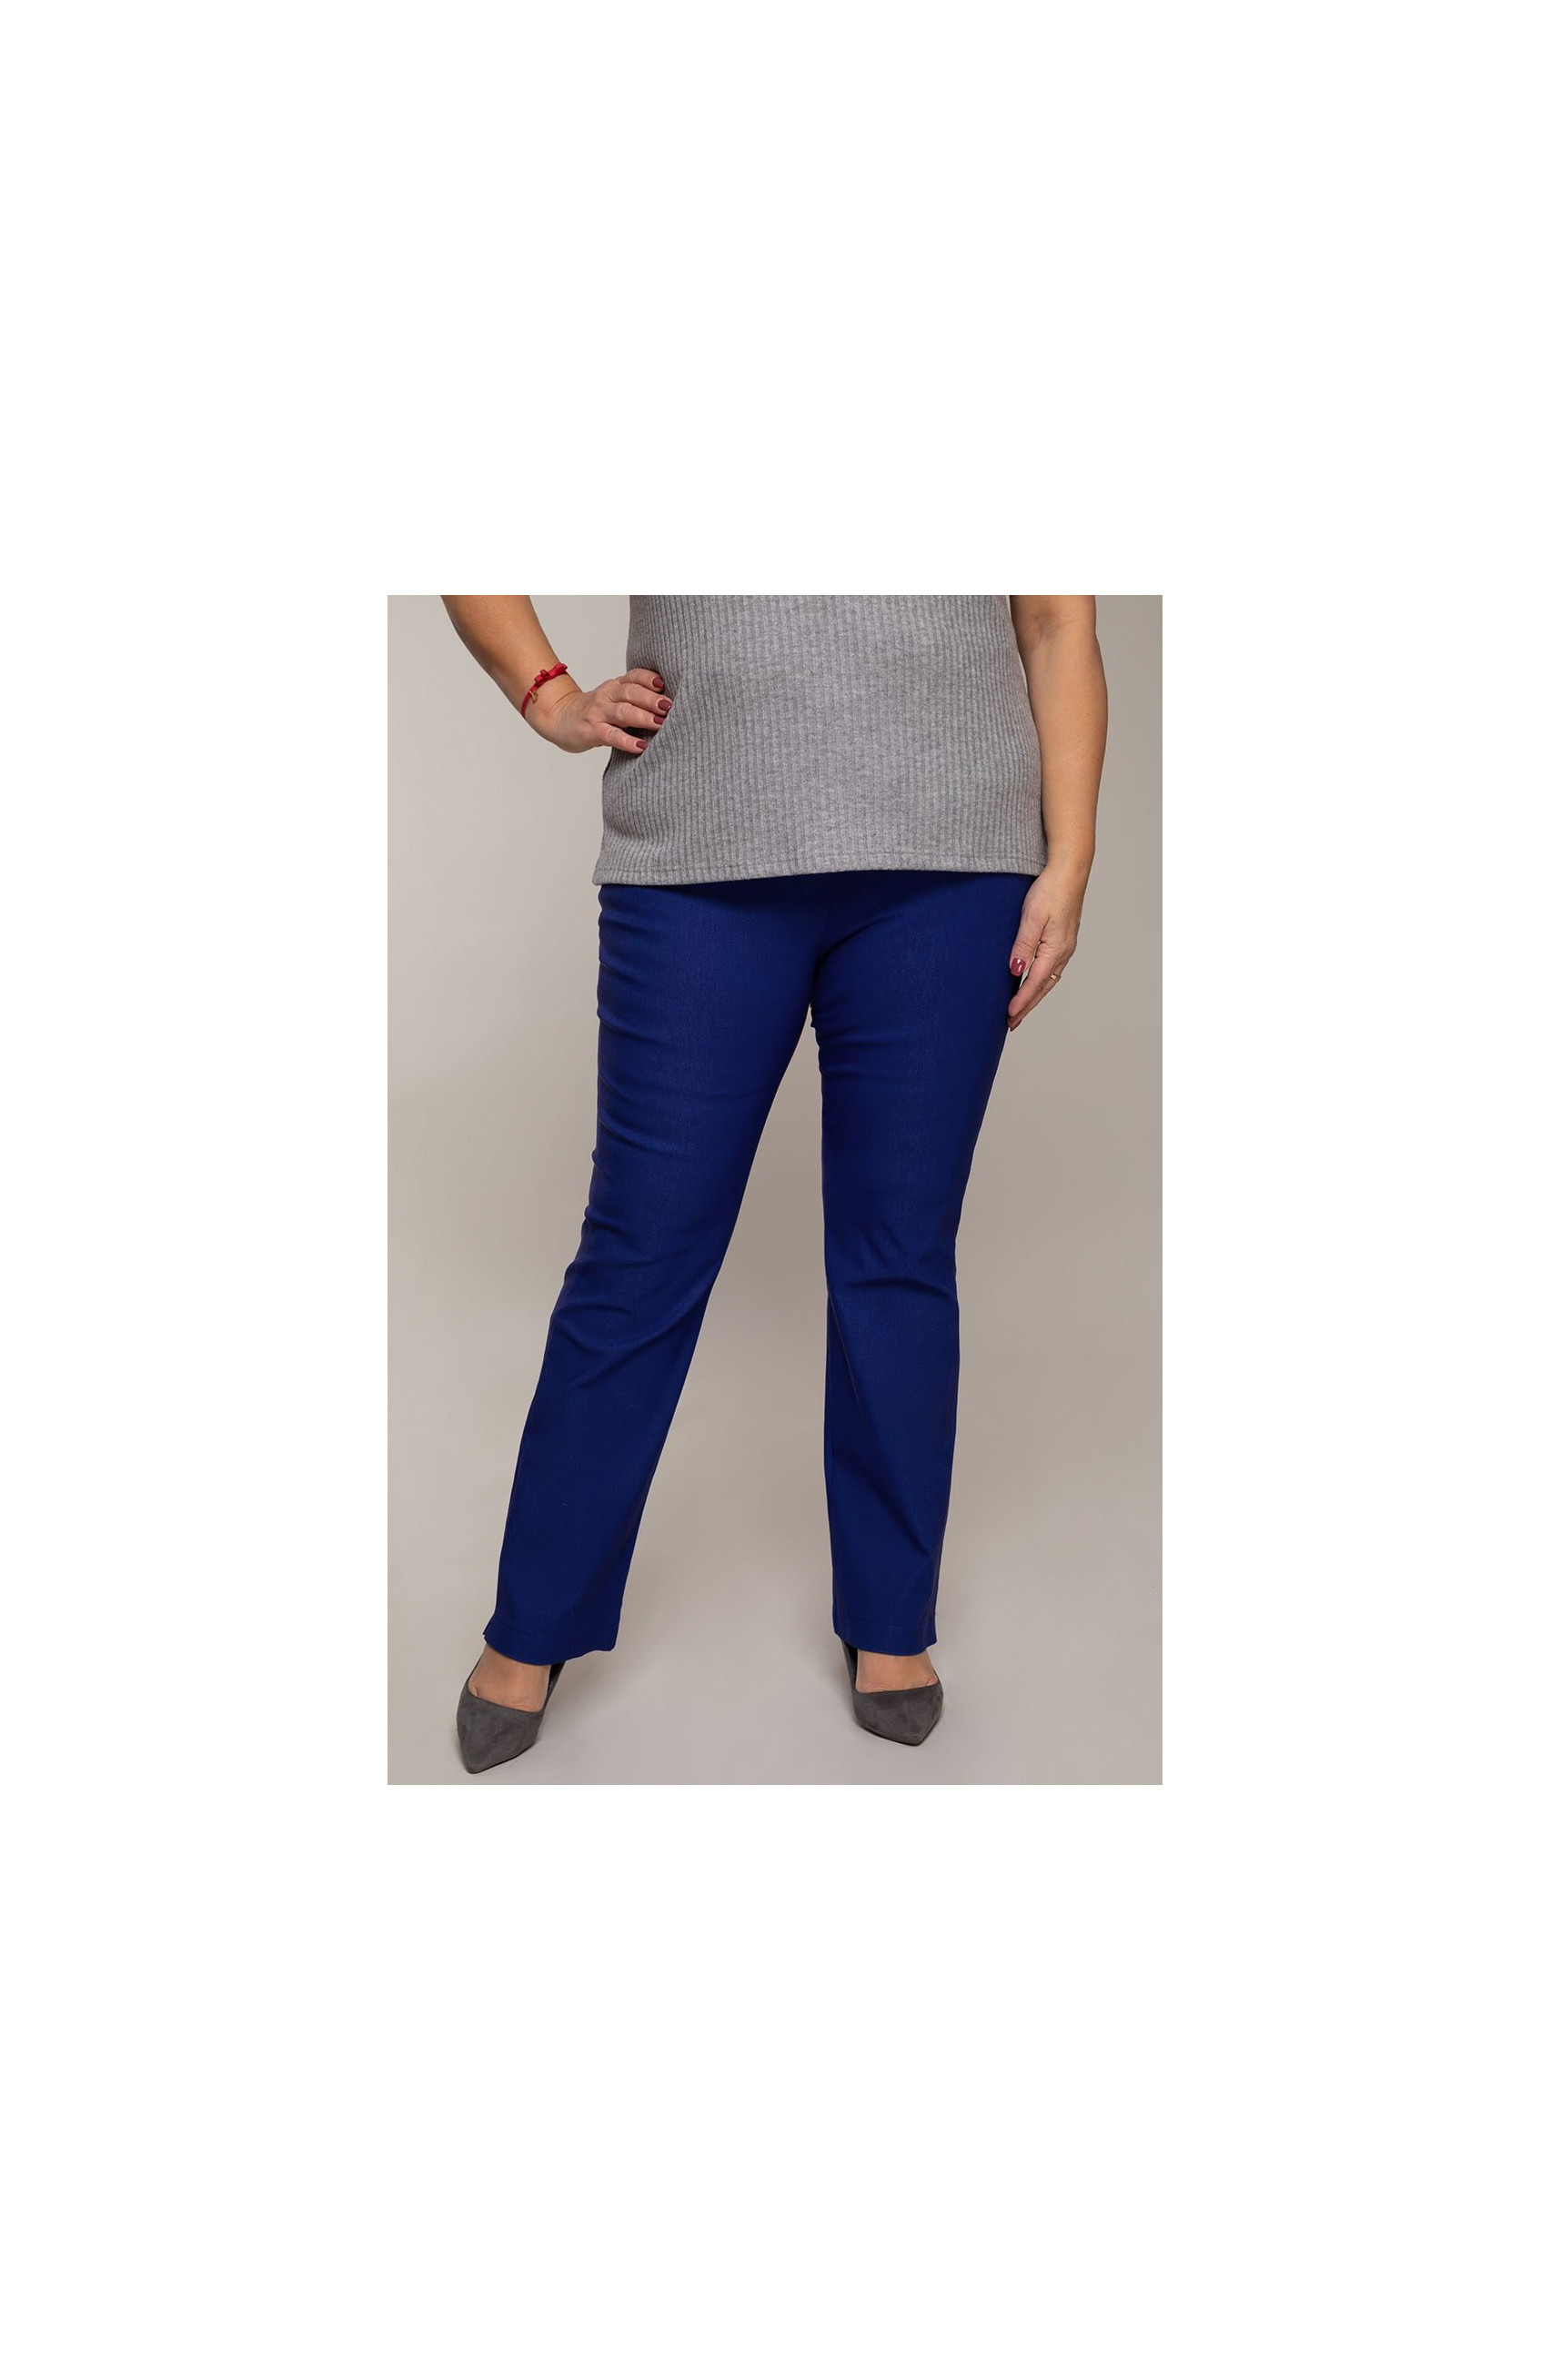 Pantaloni lungi drepți culoare albastră